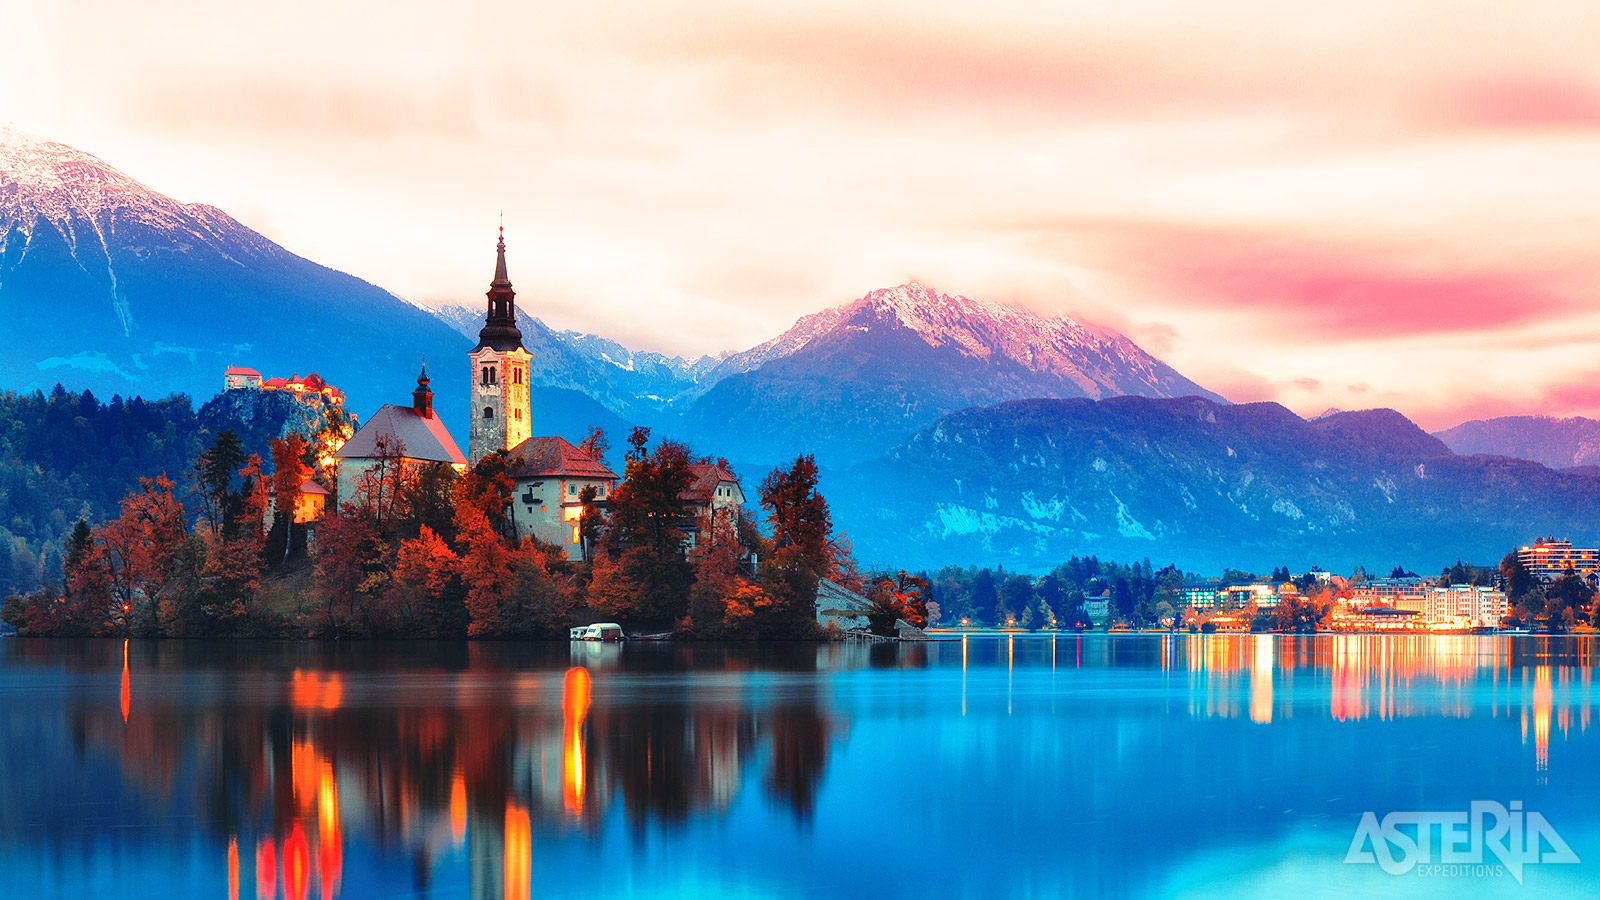 Het meer van Bled wordt door velen gezien als het mooiste meer van Slovenië en dat is niet geheel onterecht